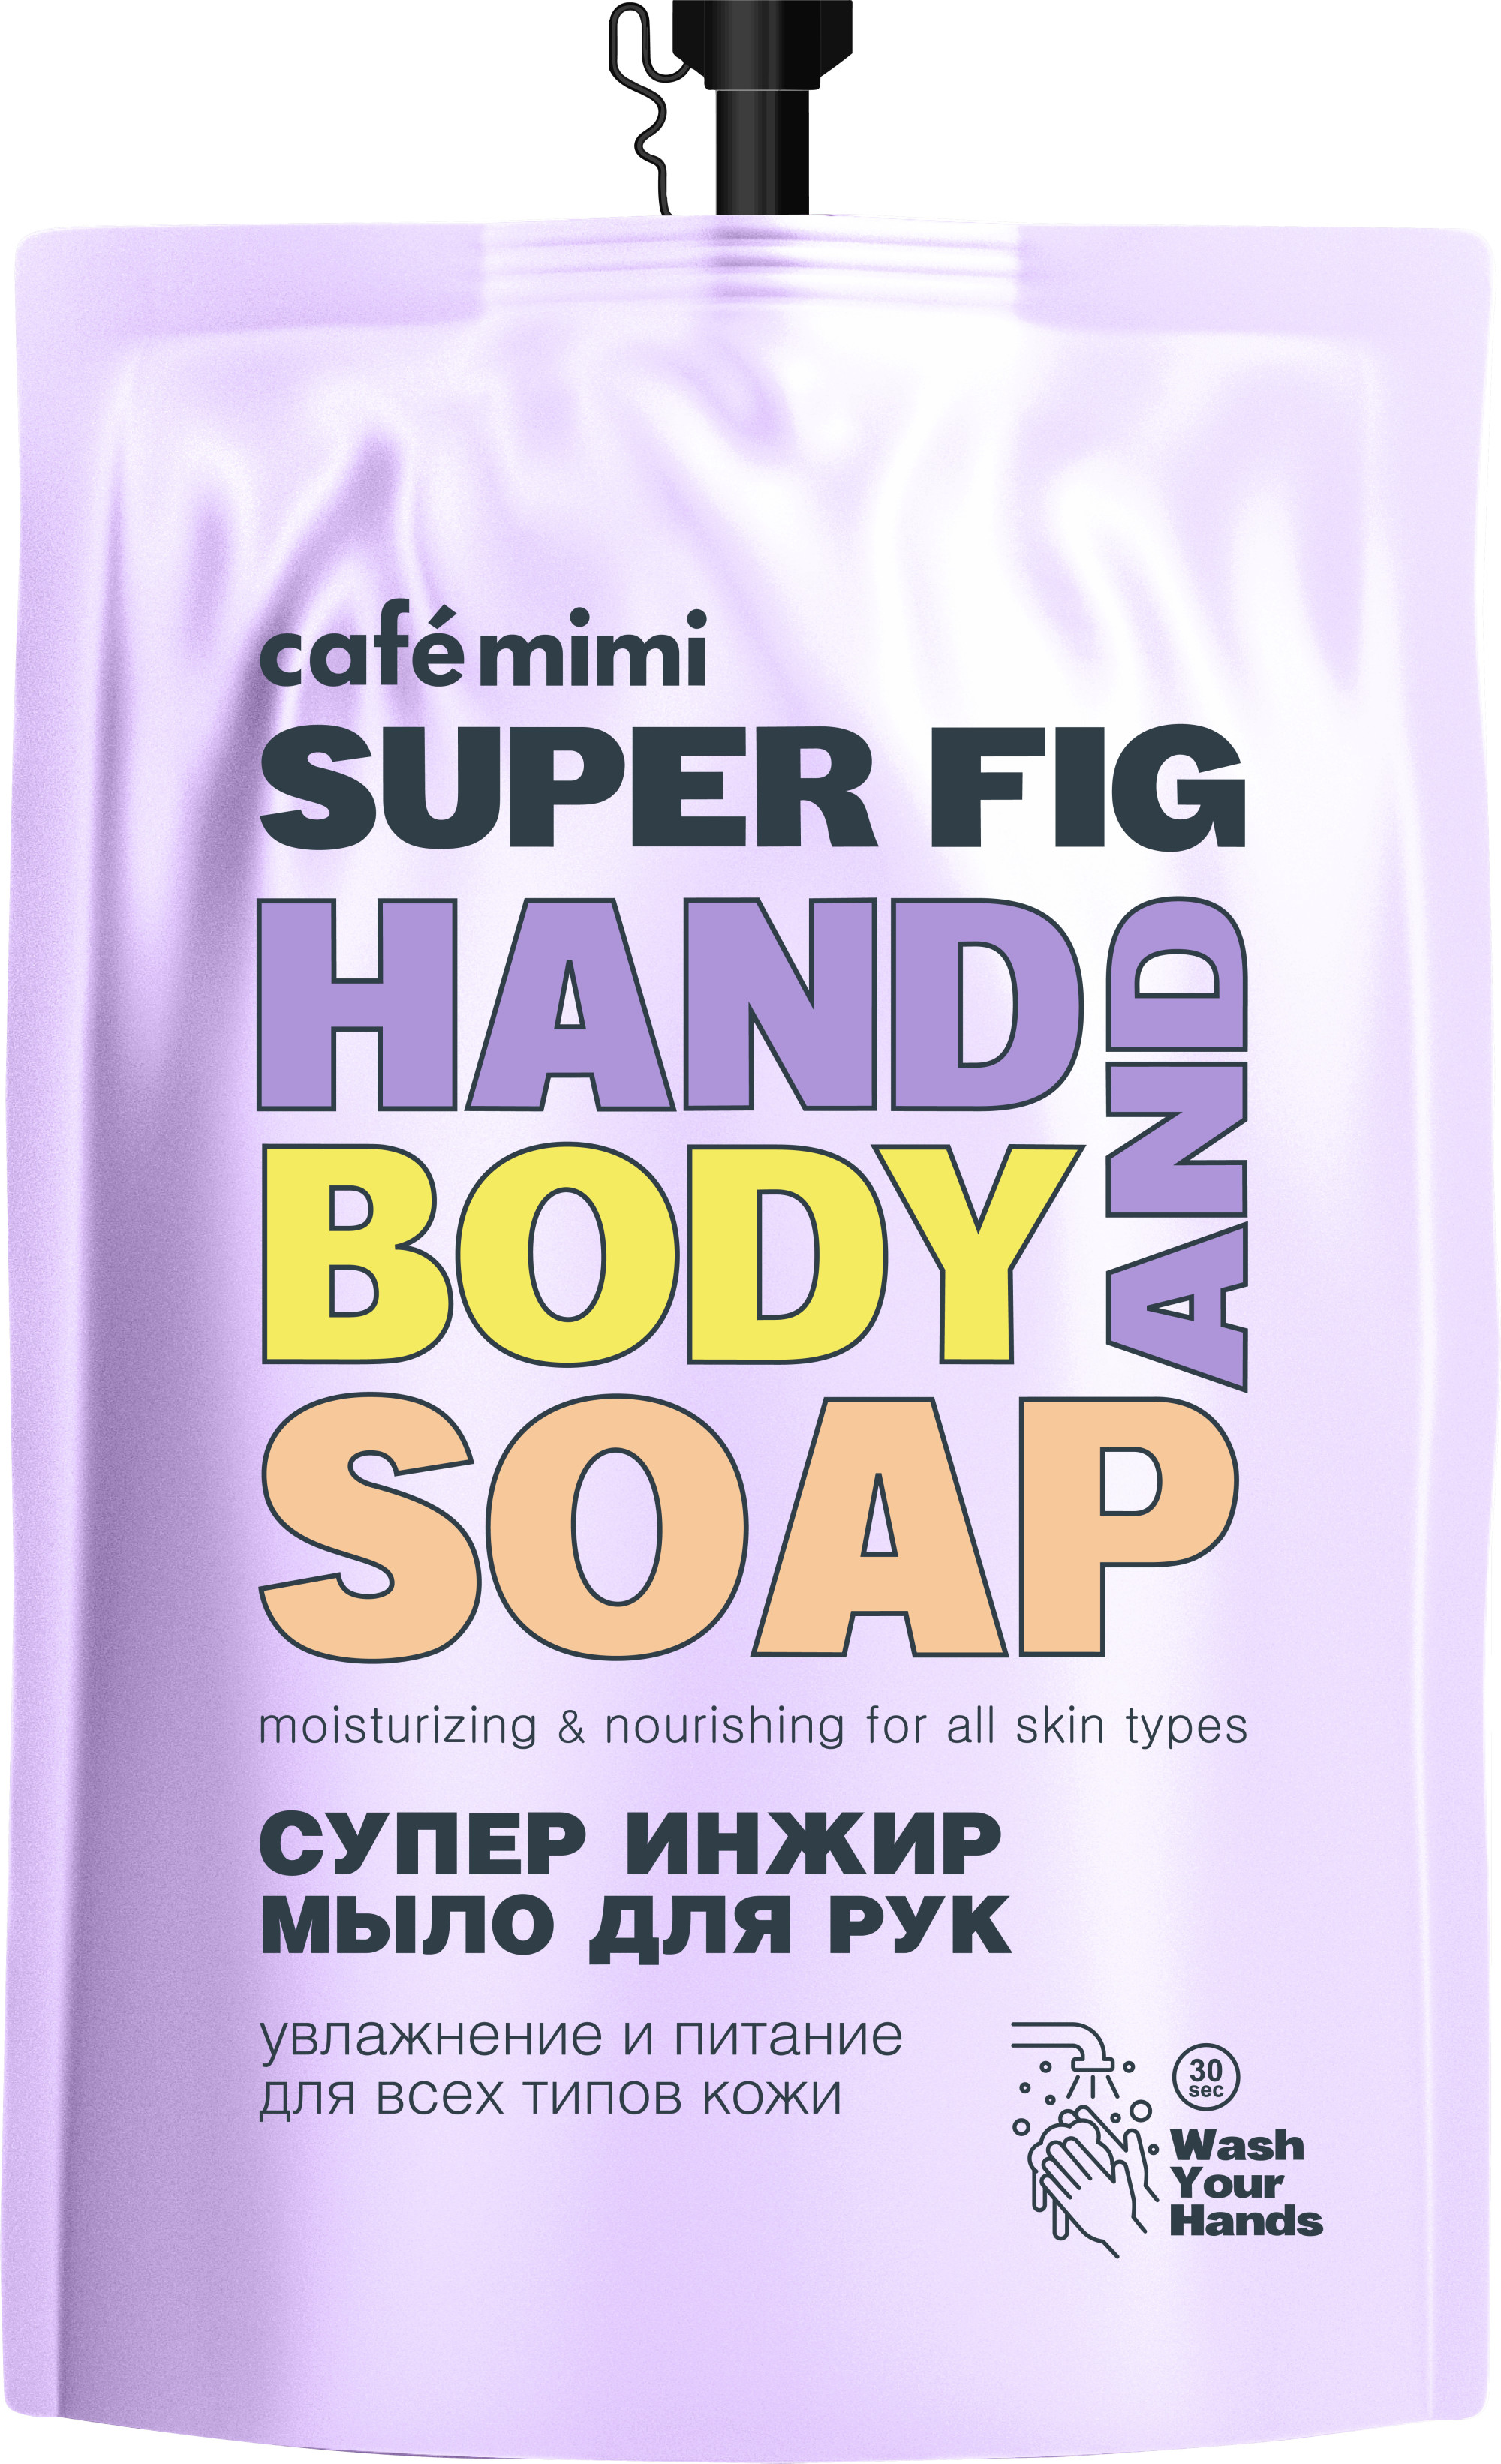 Жидкое мыло для рук Cafe mimi, Super Food Супер инжир запасной пакет,  450 мл